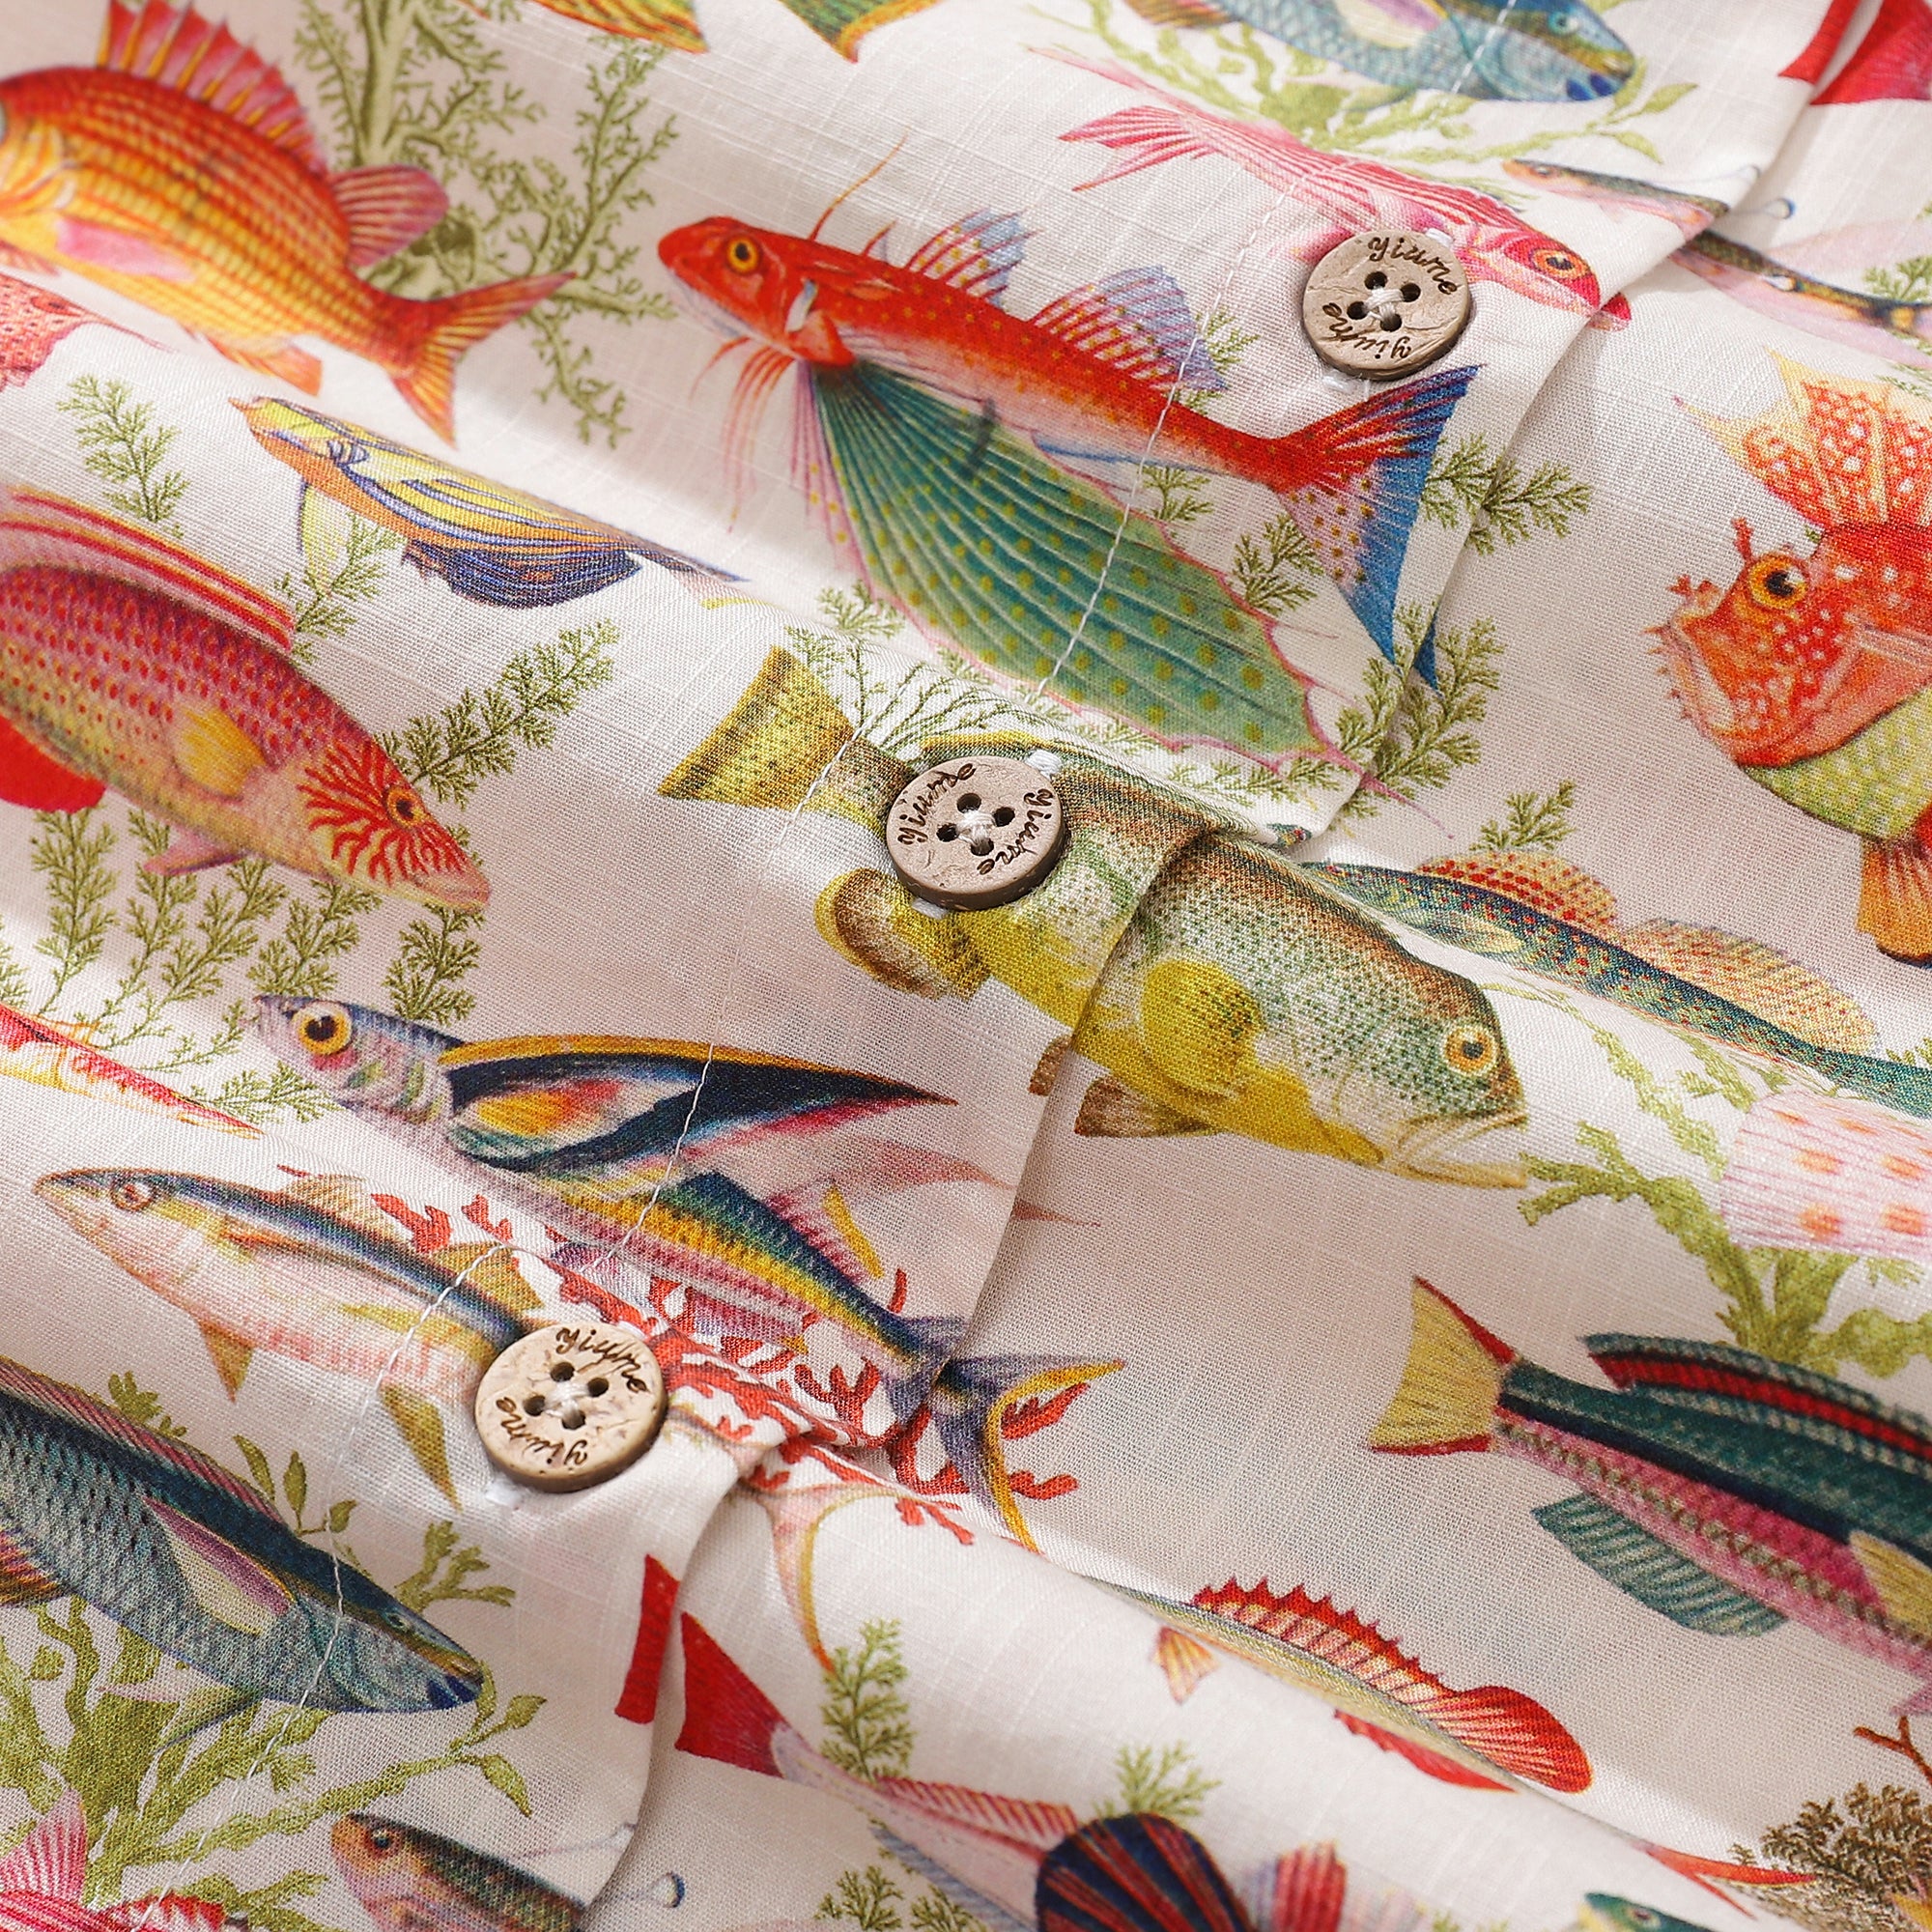 Camisa hawaiana de mujer con estampado de peces marinos y océano, manga corta con botones de algodón